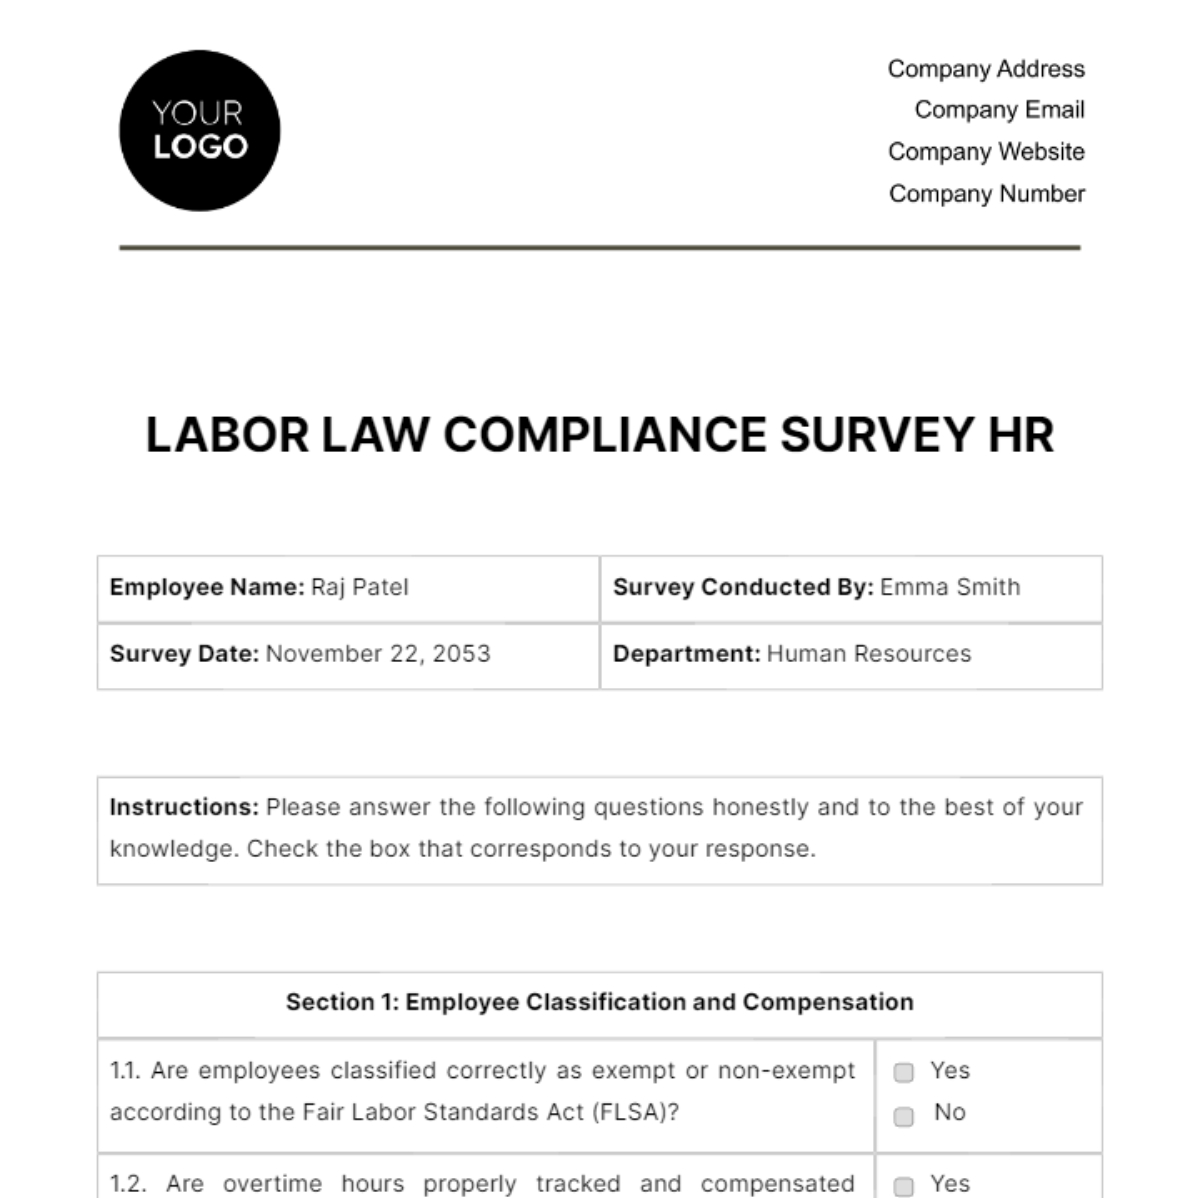 Labor Law Compliance Survey HR Template